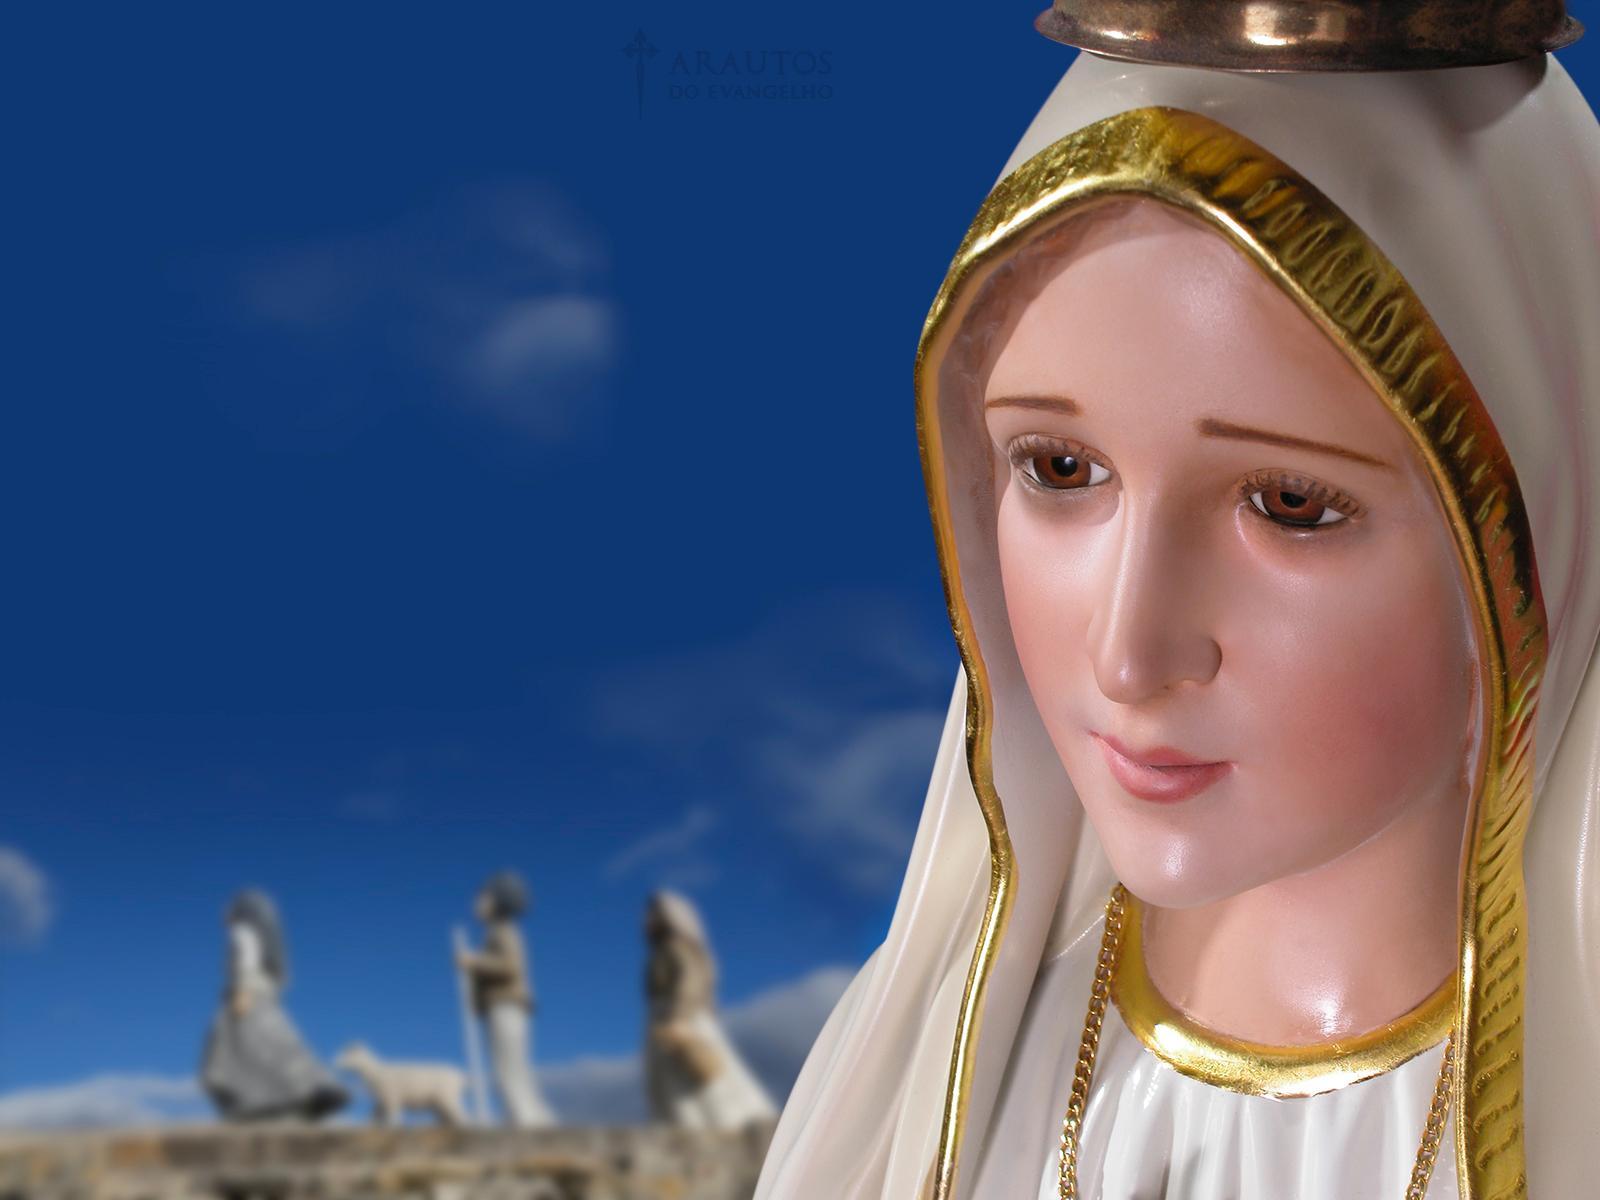 Nossa Senhora de Fatima